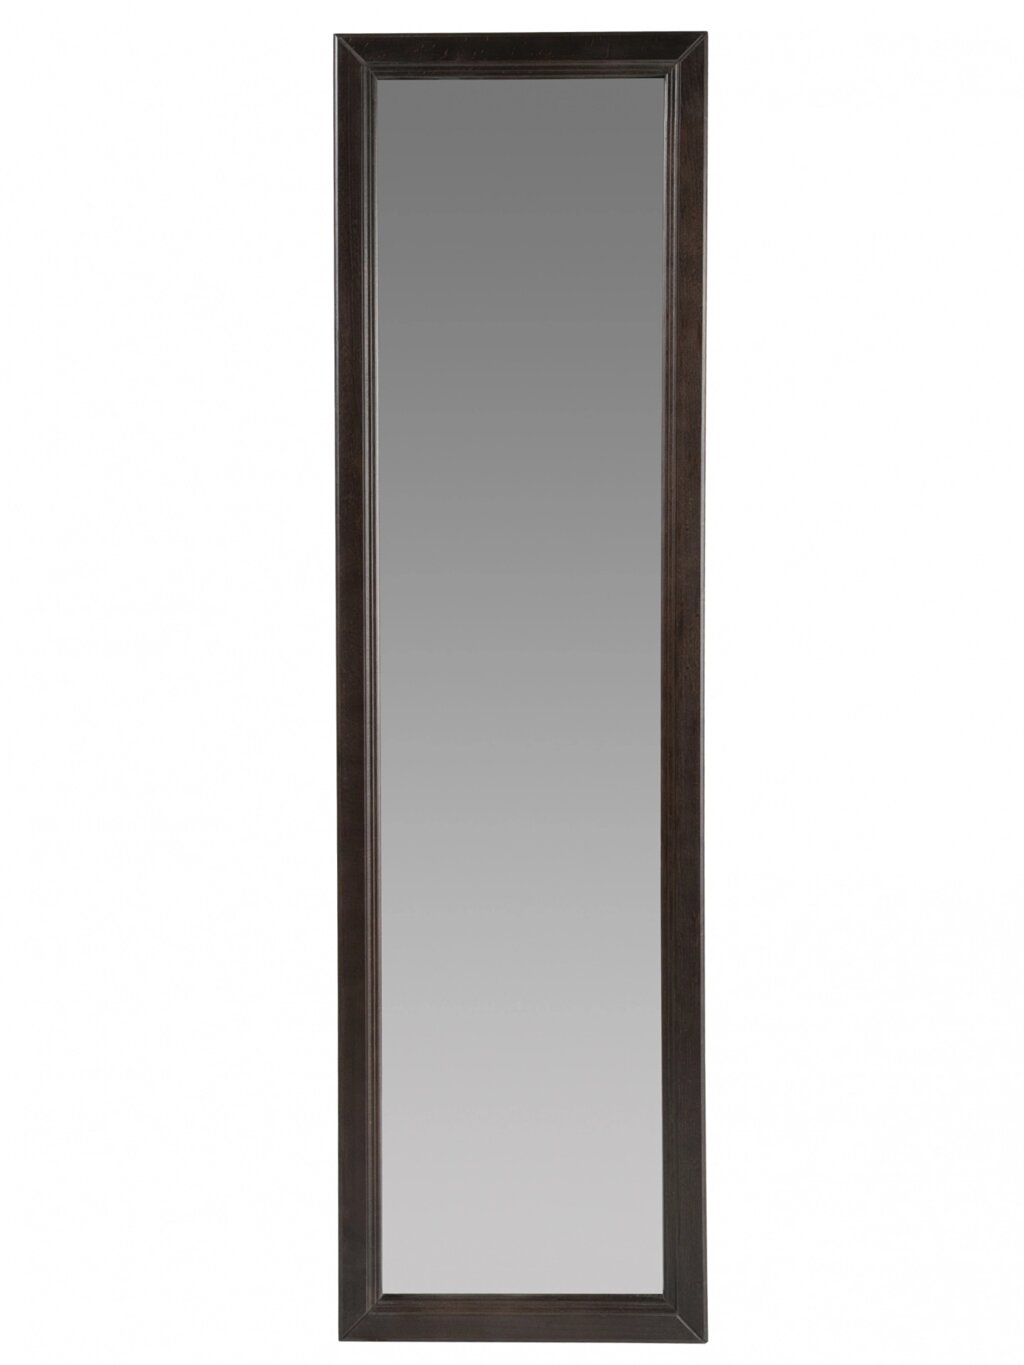 Зеркало настенное Селена 1 венге 119 см х 33 | 5 см от компании M-Lion мебель - фото 1